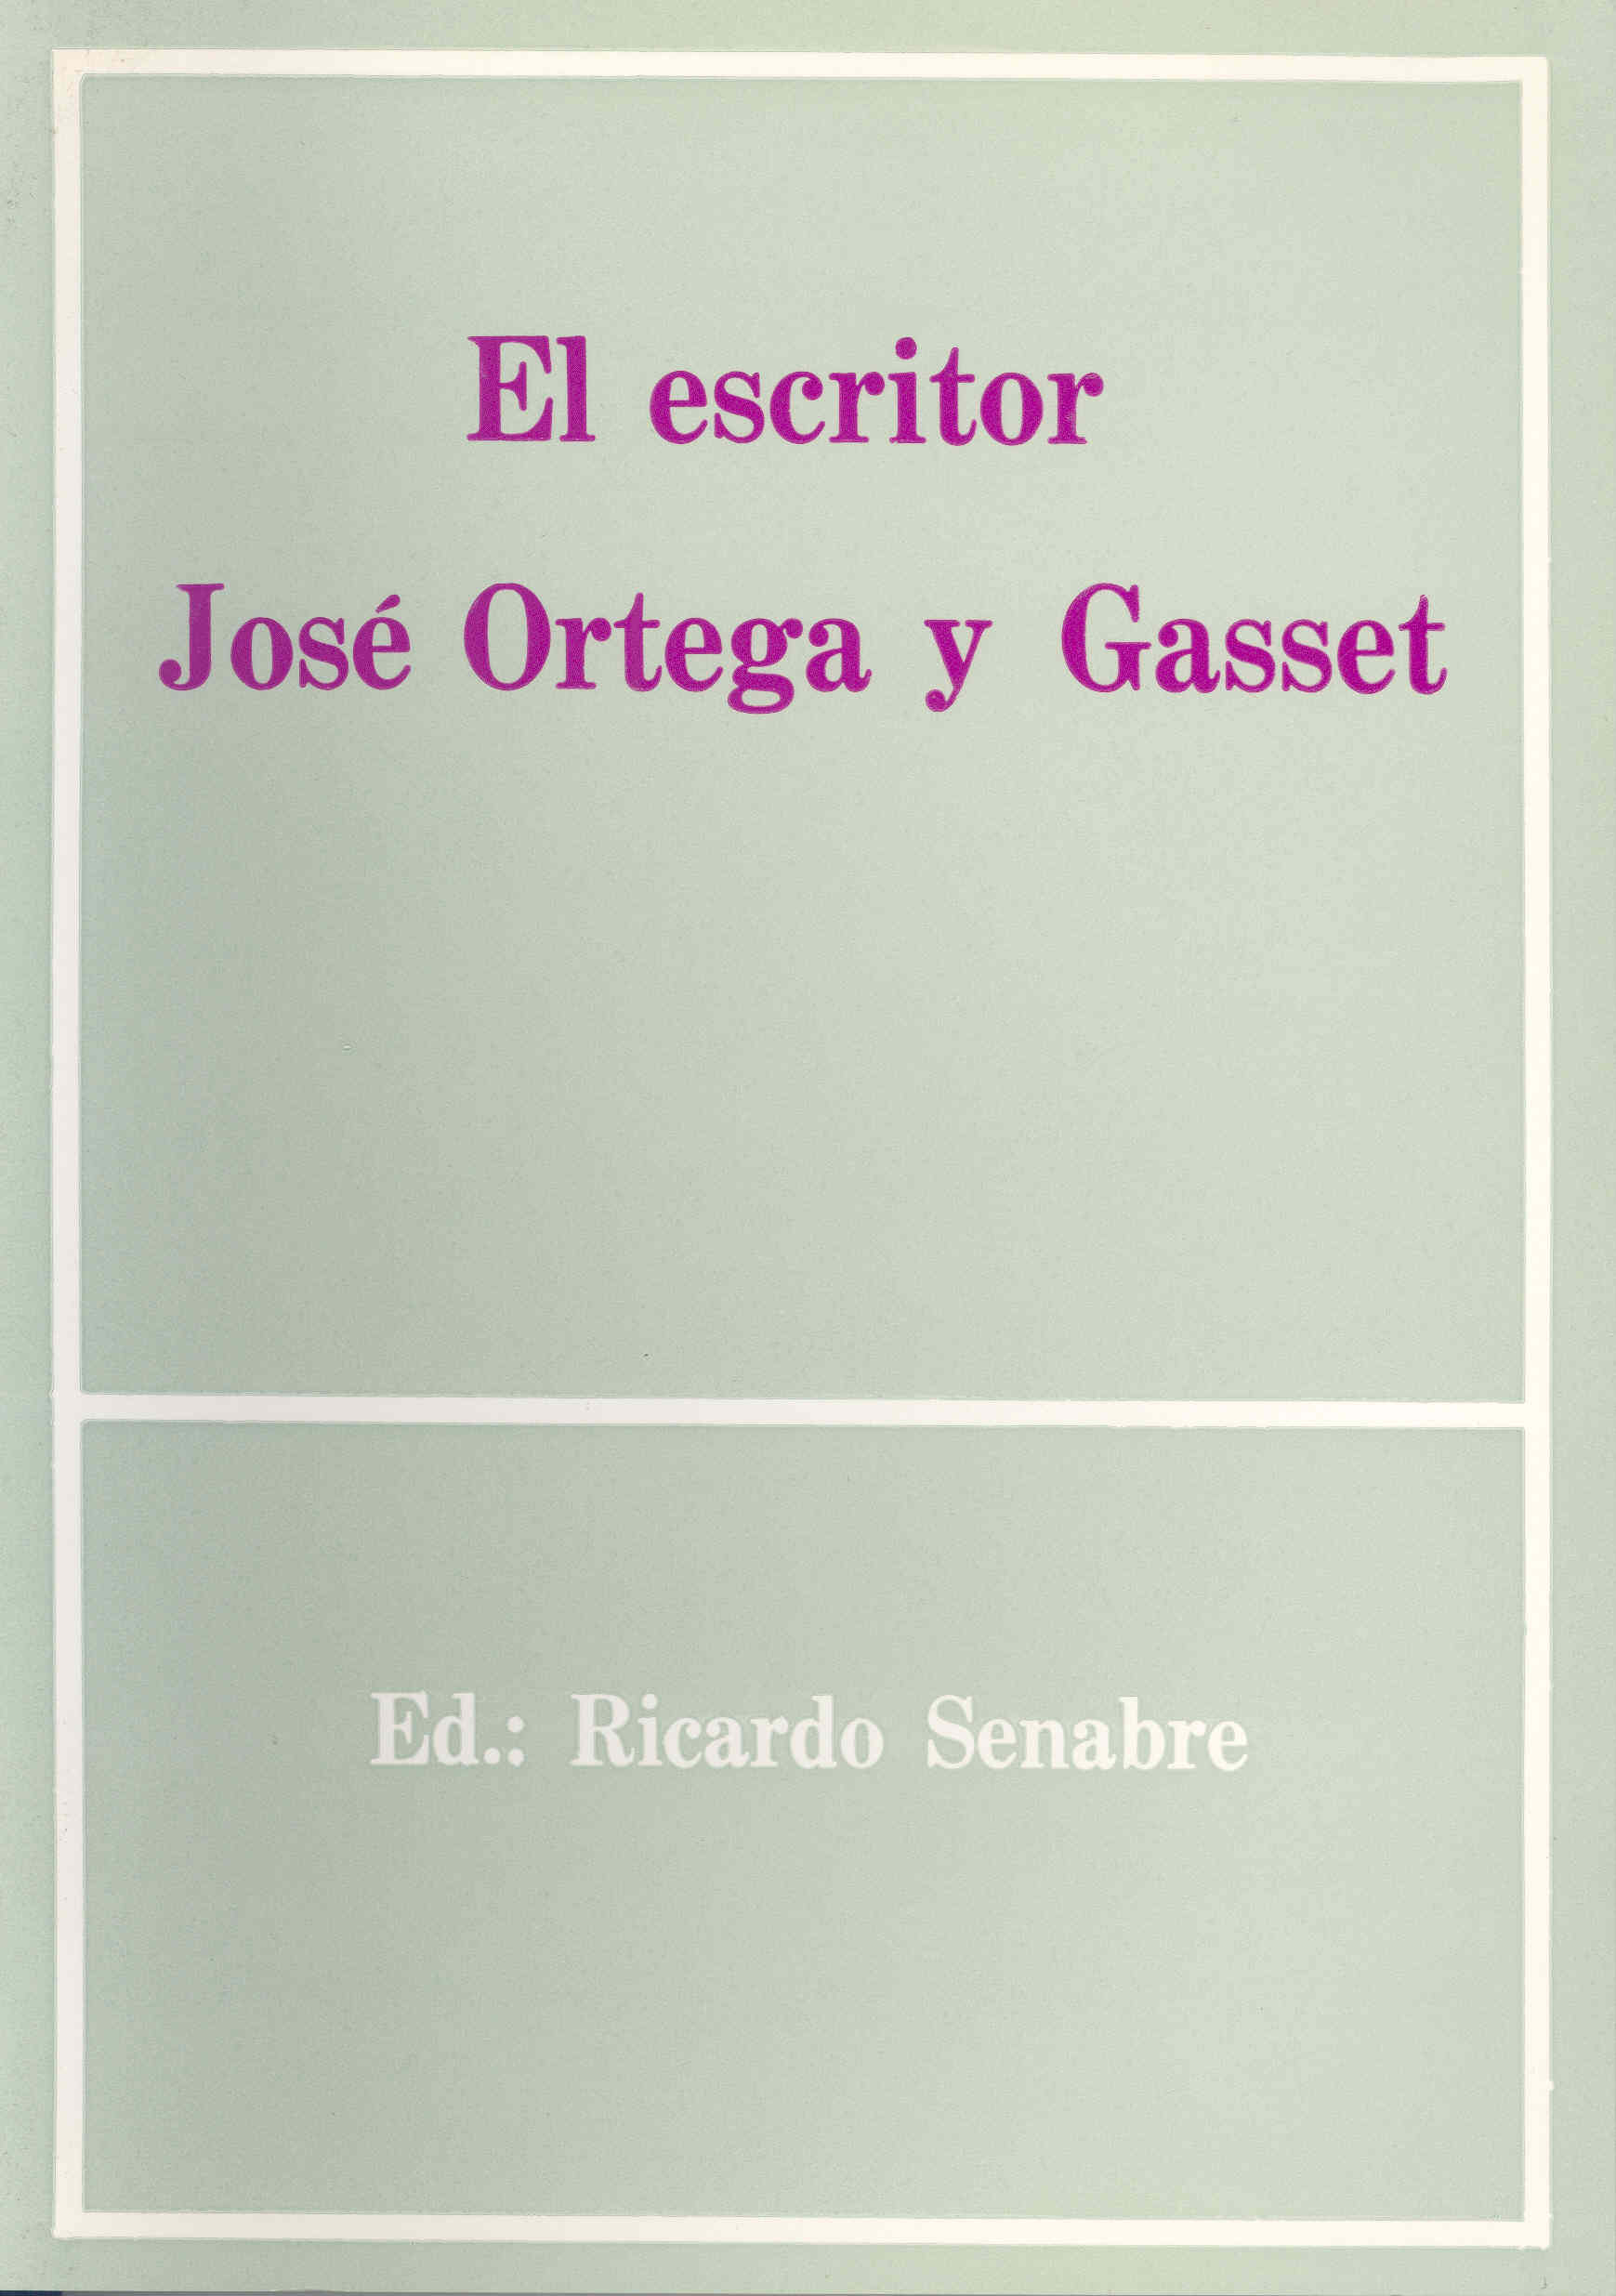 Imagen de portada del libro El escritor José Ortega y Gasset